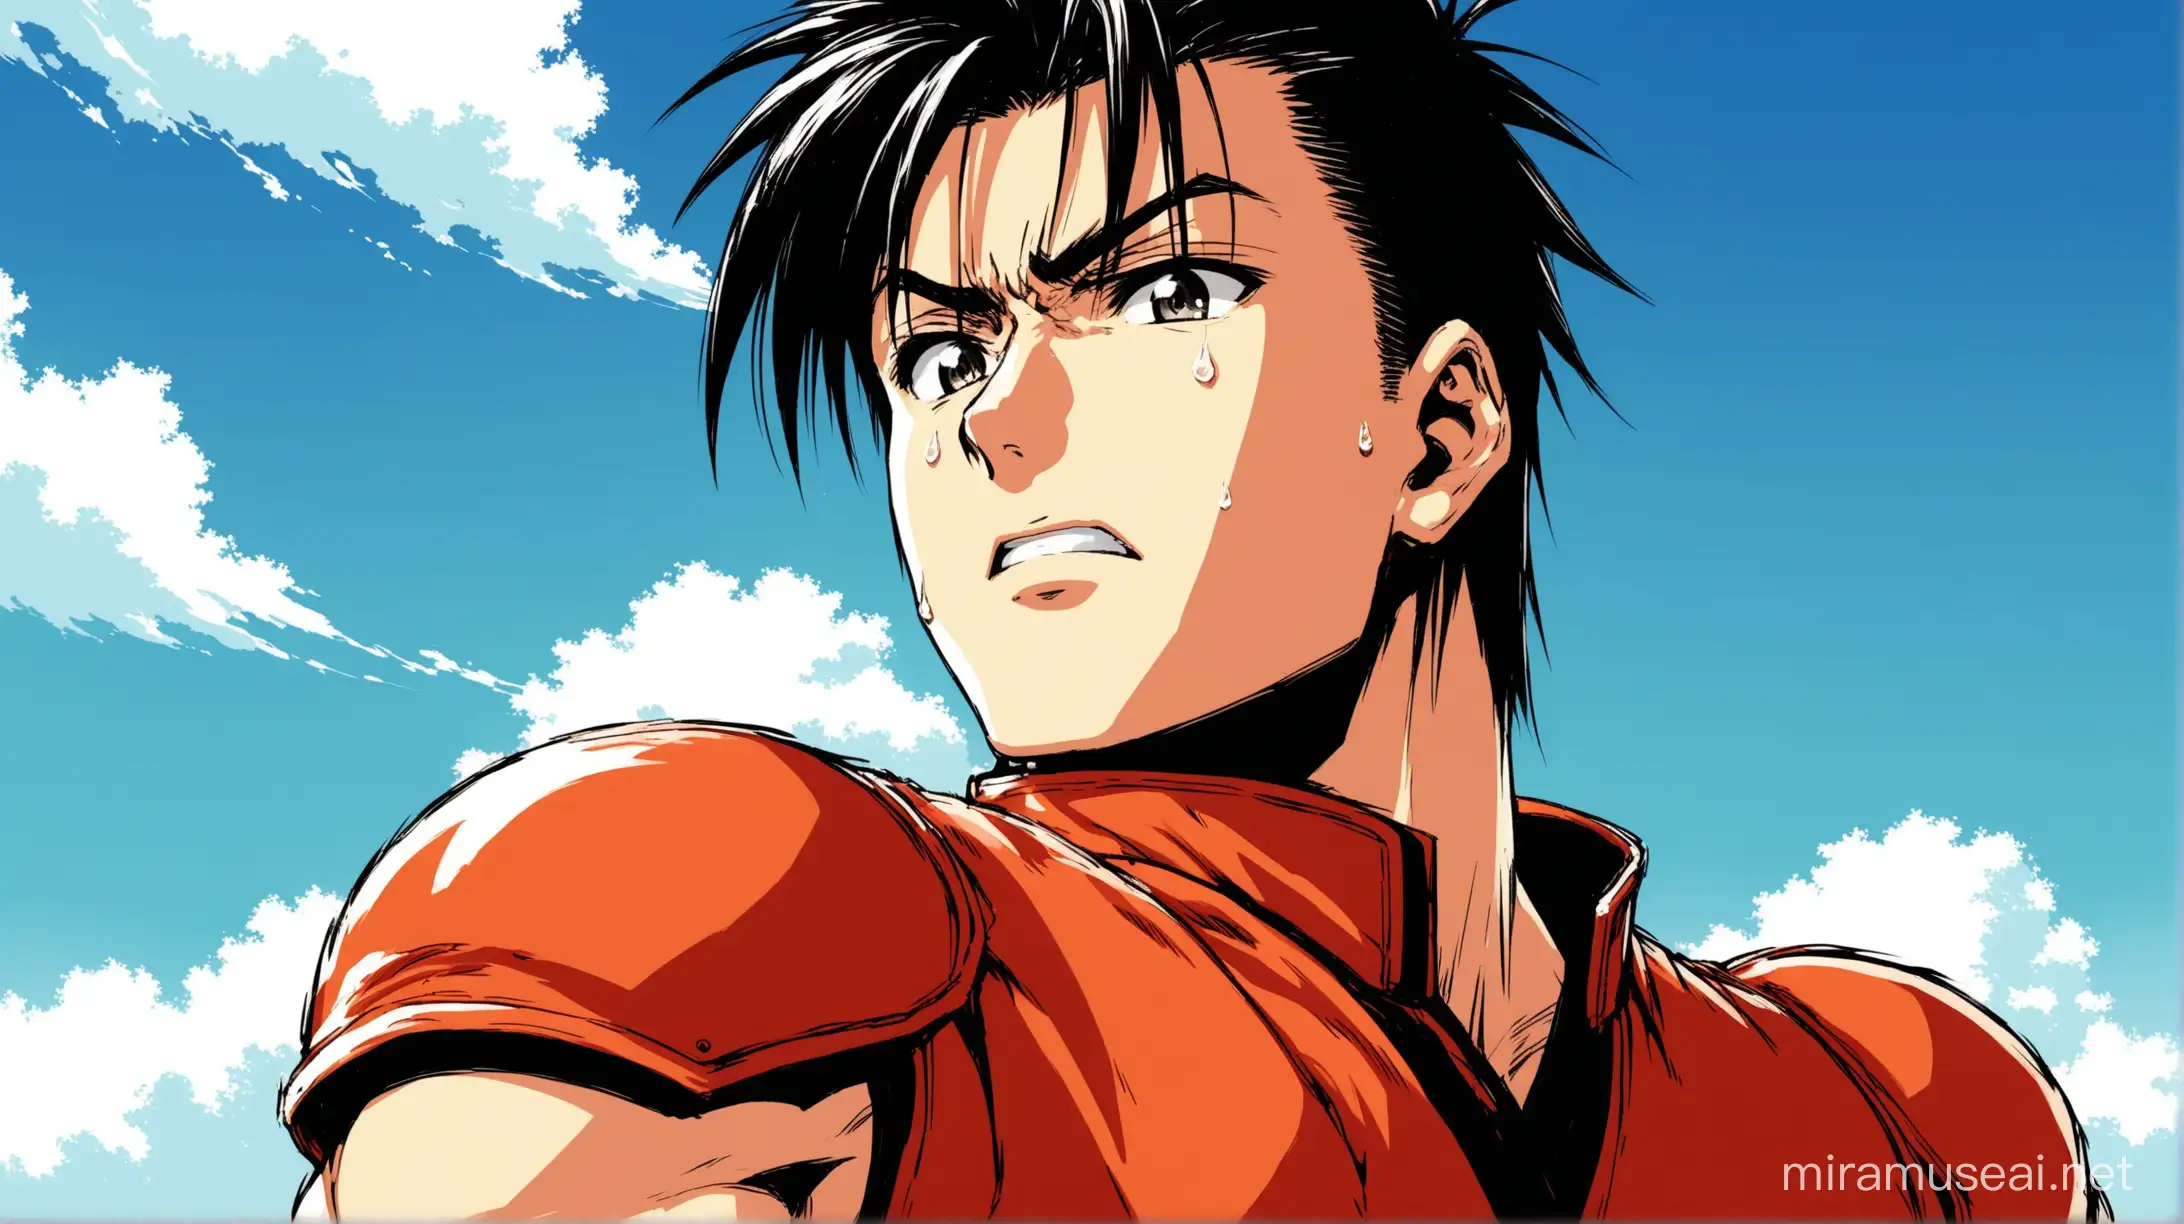 Akira de Virtua Fighter, ému avec les larmes aux yeux, qui regarde vers le ciel, style manga